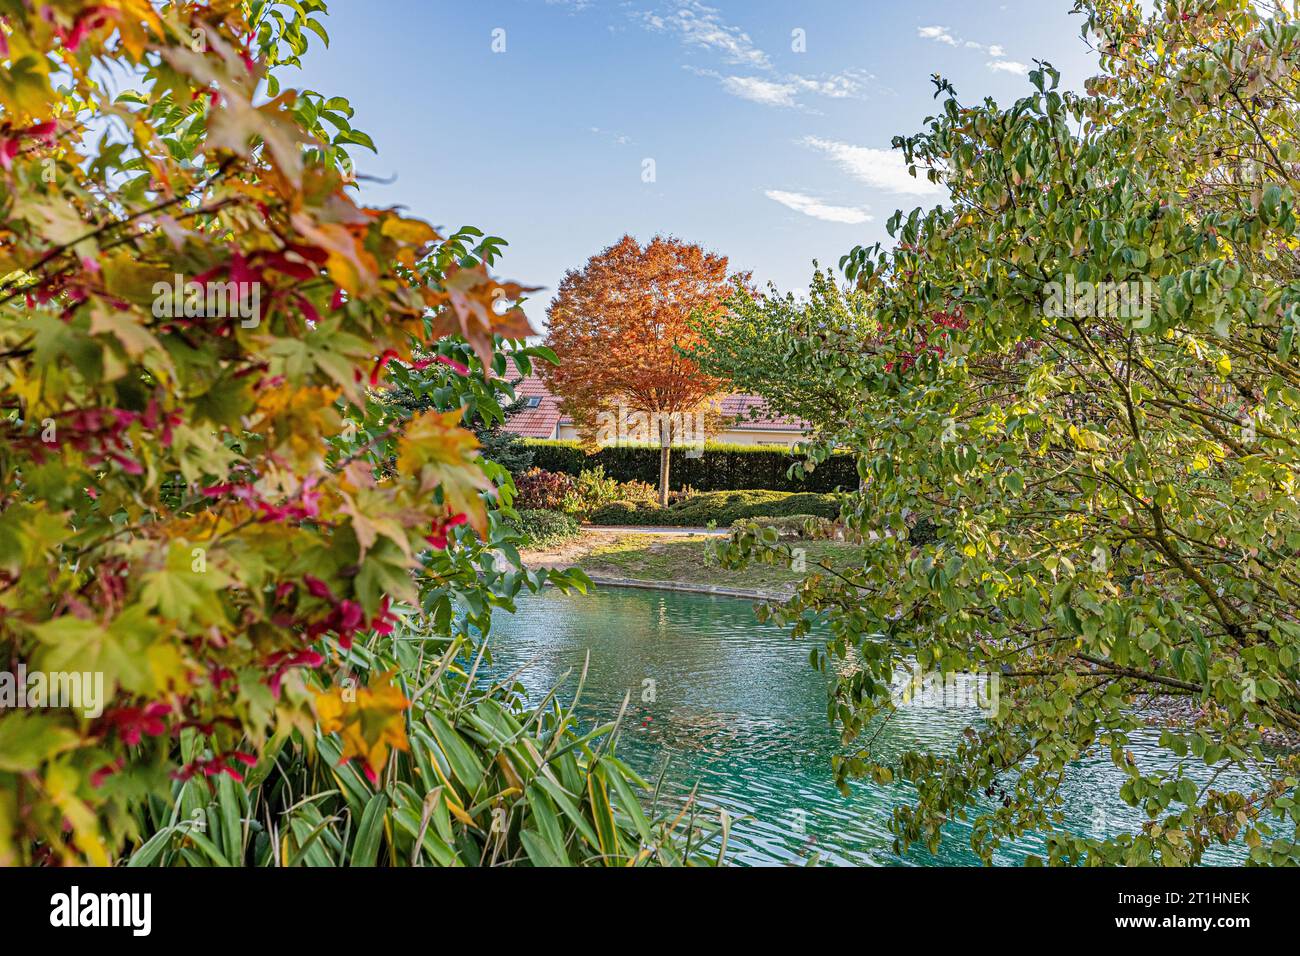 The Japanese garden in Dijon in autumn colours. Le jardin japonais à Dijon aux couleurs de l'automne. Stock Photo